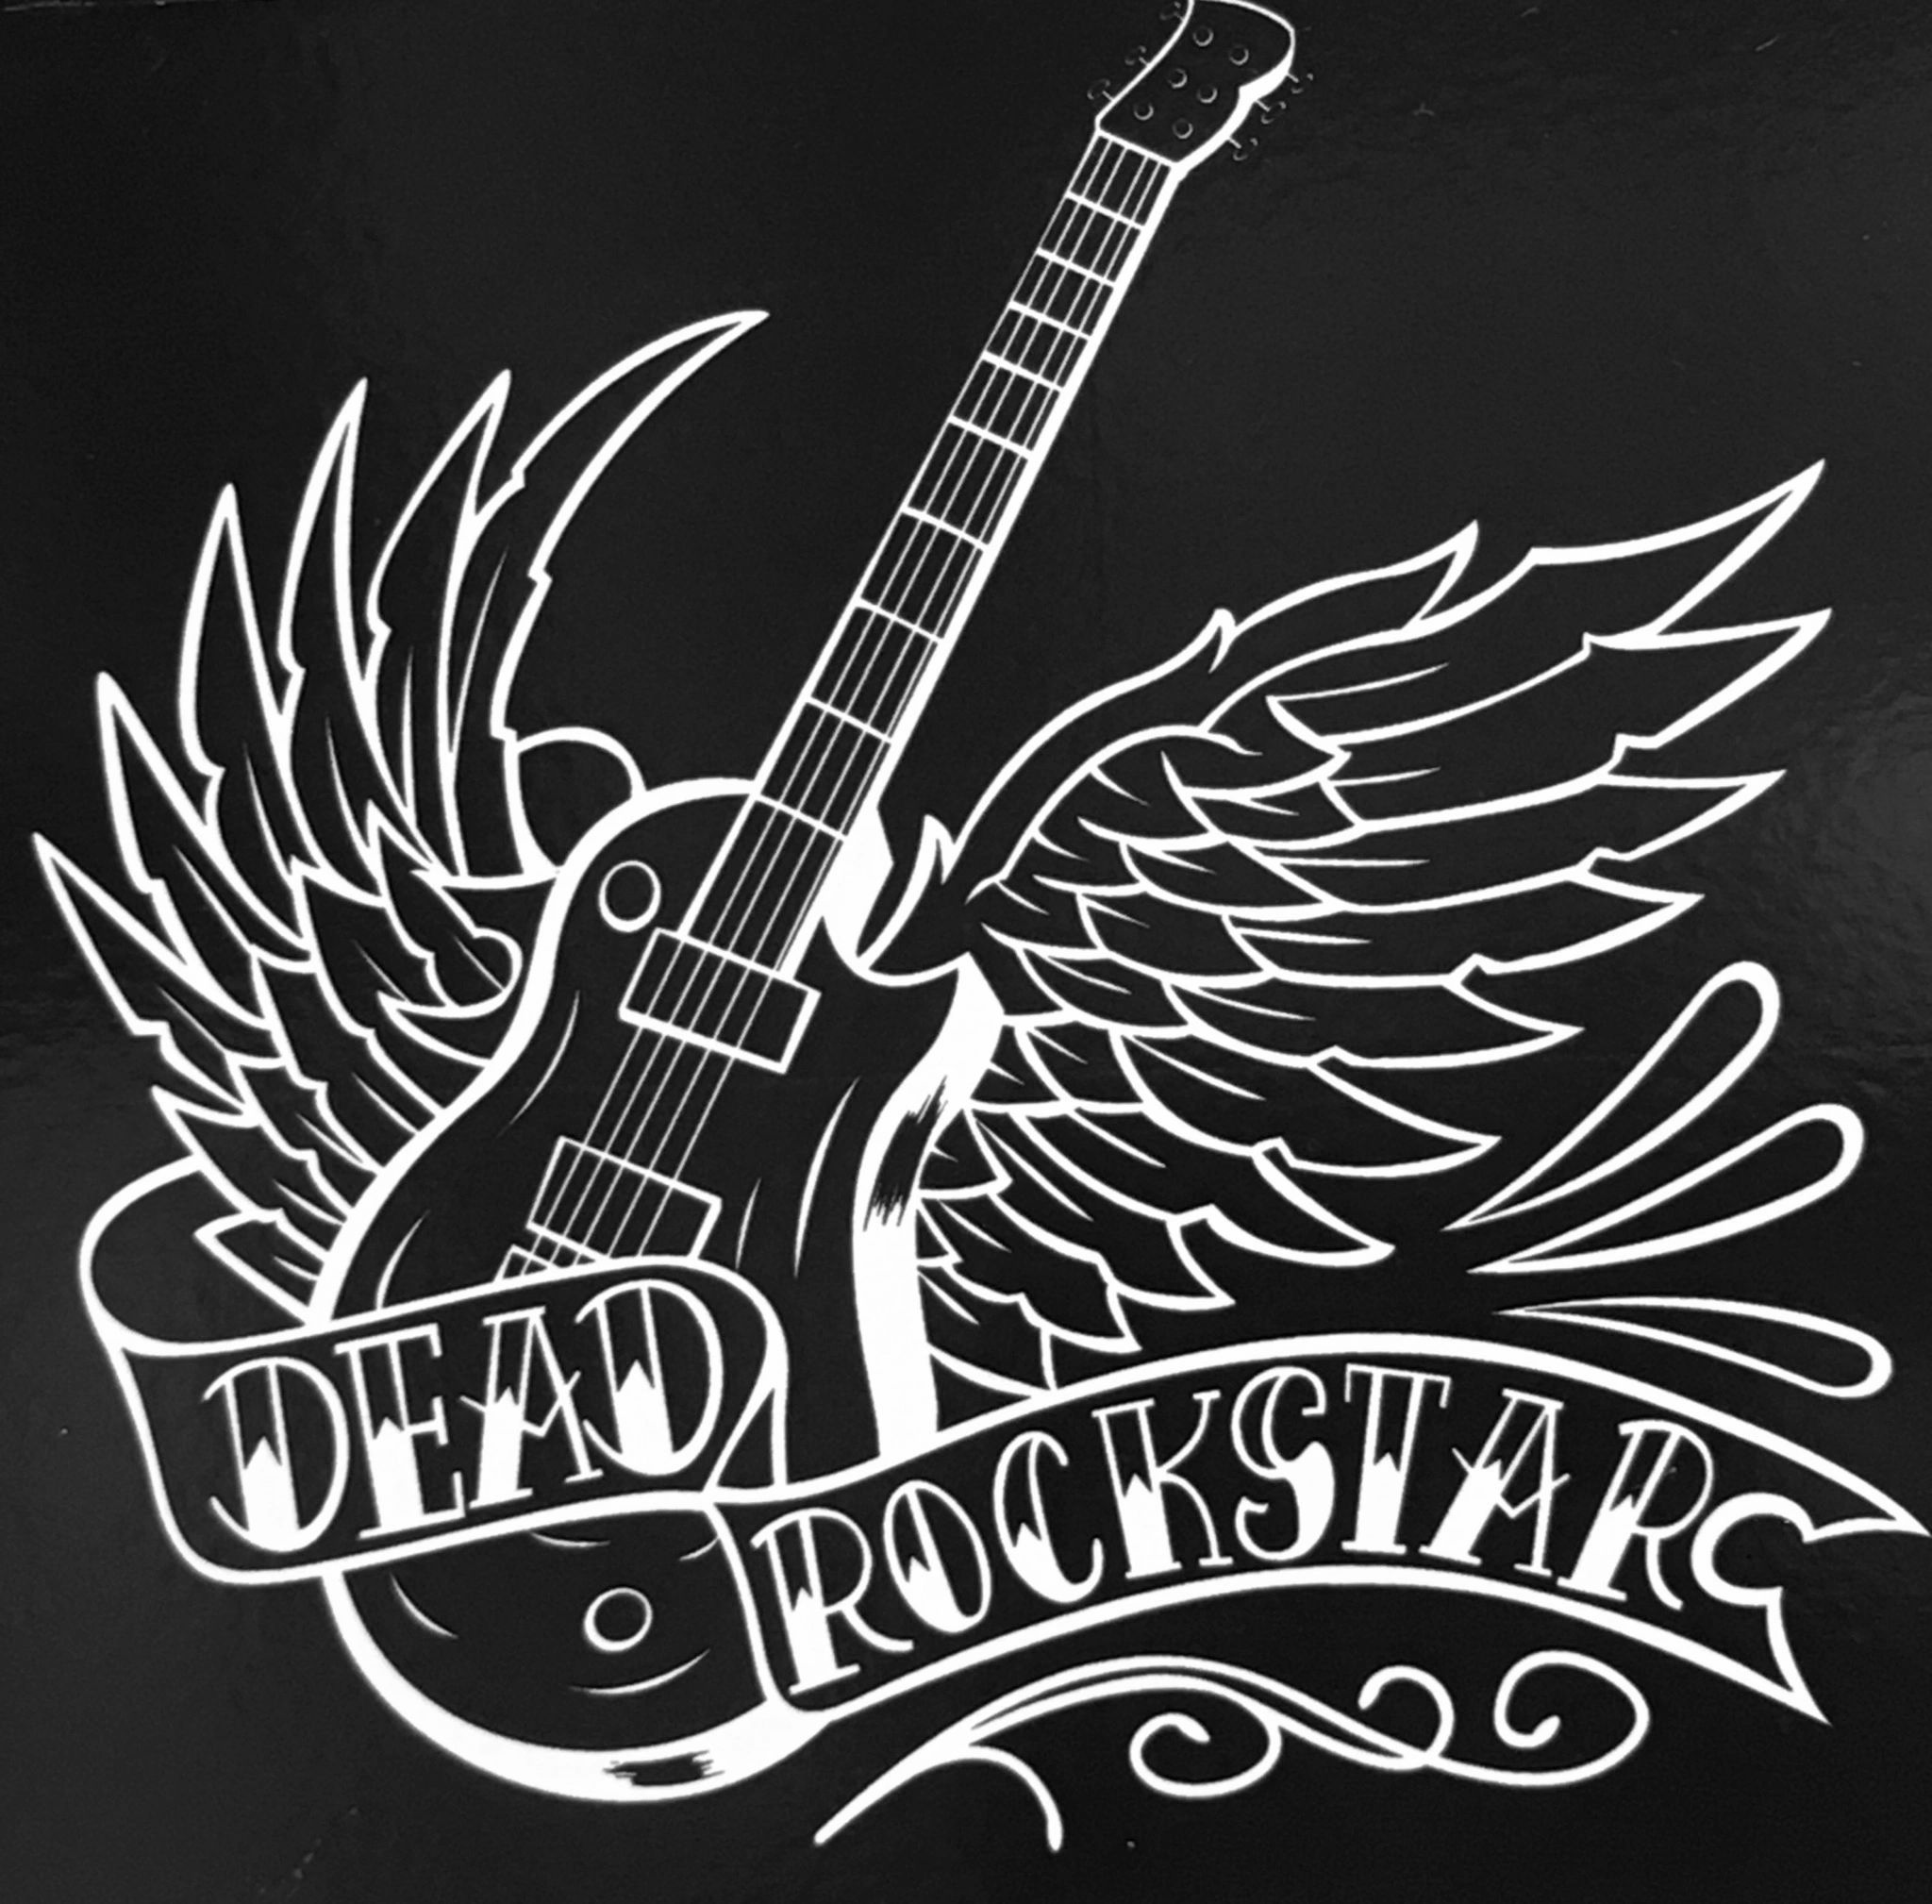 Dead RockStar Logo Fargo, North Dakota new logo design 2012